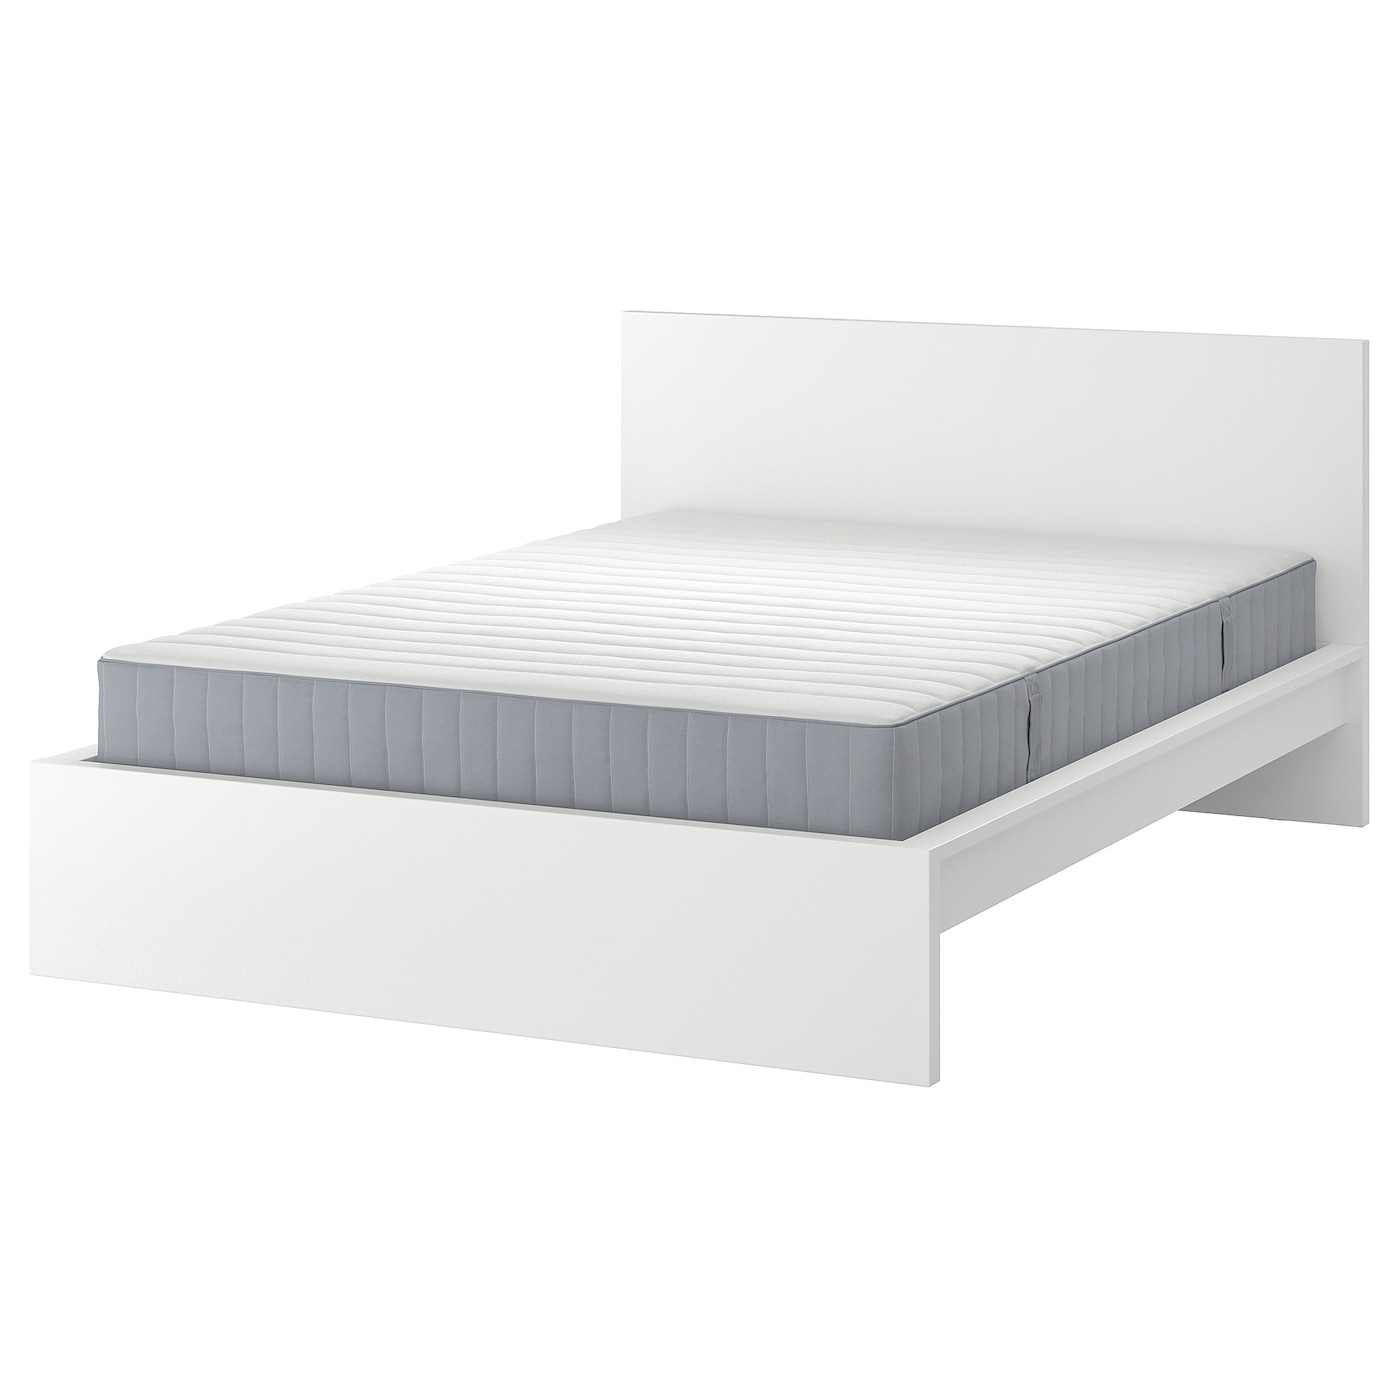 Кровать - IKEA MALM, 200х160 см, жесткий матрас, белый, МАЛЬМ ИКЕА